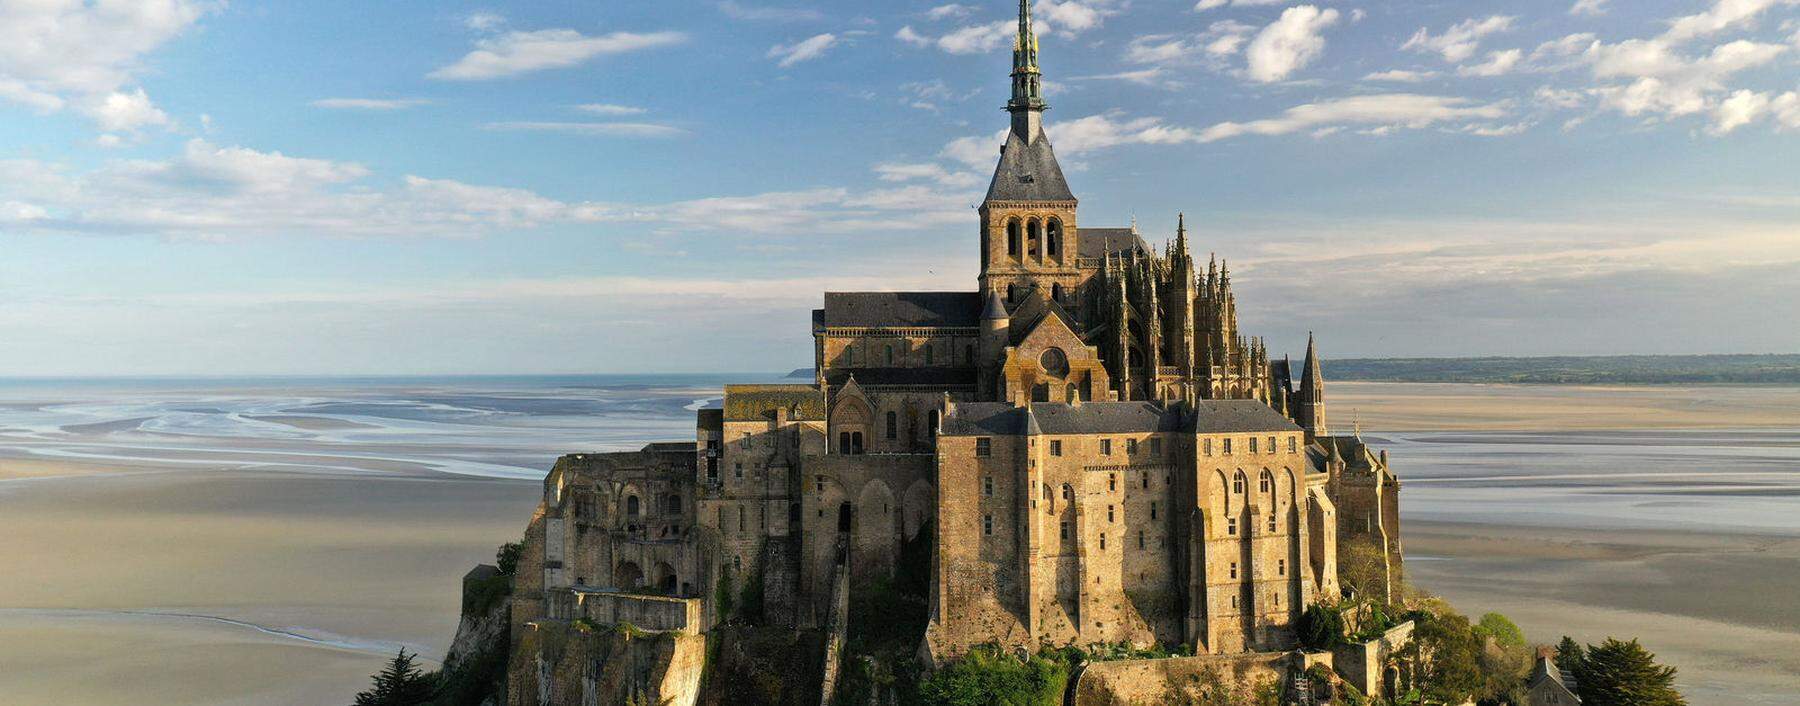 Mont Saint-Michel: Unesco-Welterbe und zu normalen Zeiten entsprechend von Touristen gestürmt.  